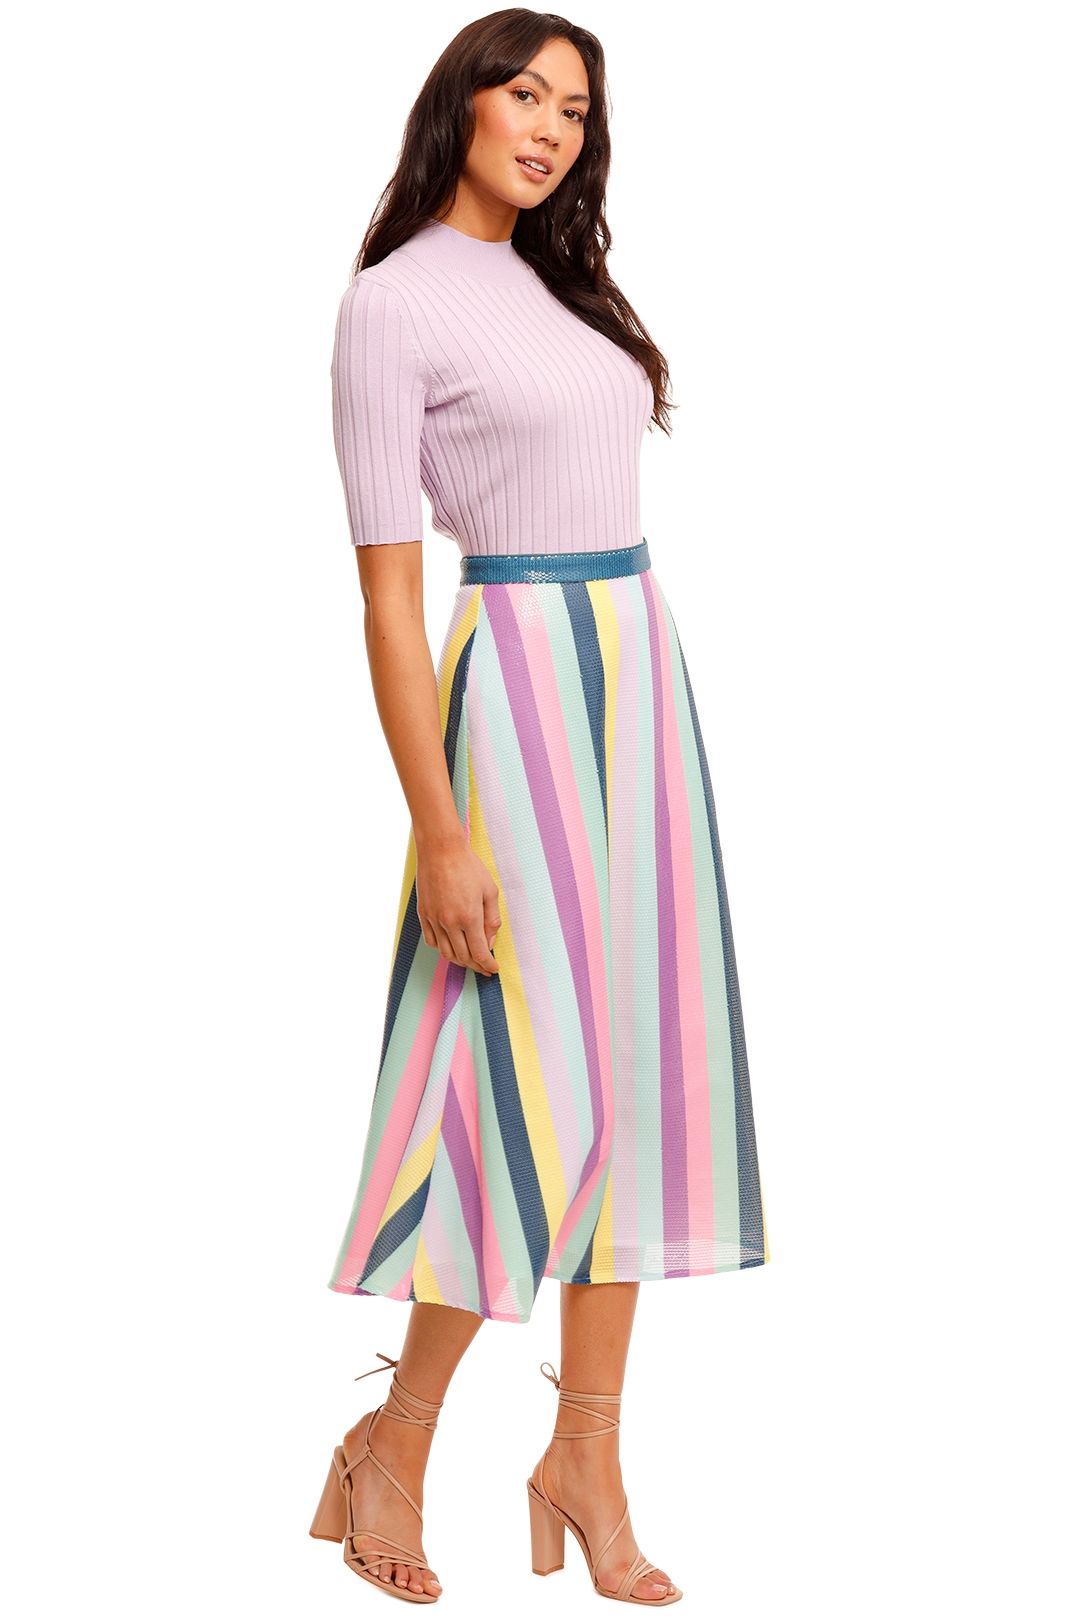 Olivia Rubin Penelope Striped Skirt Stripe Midi